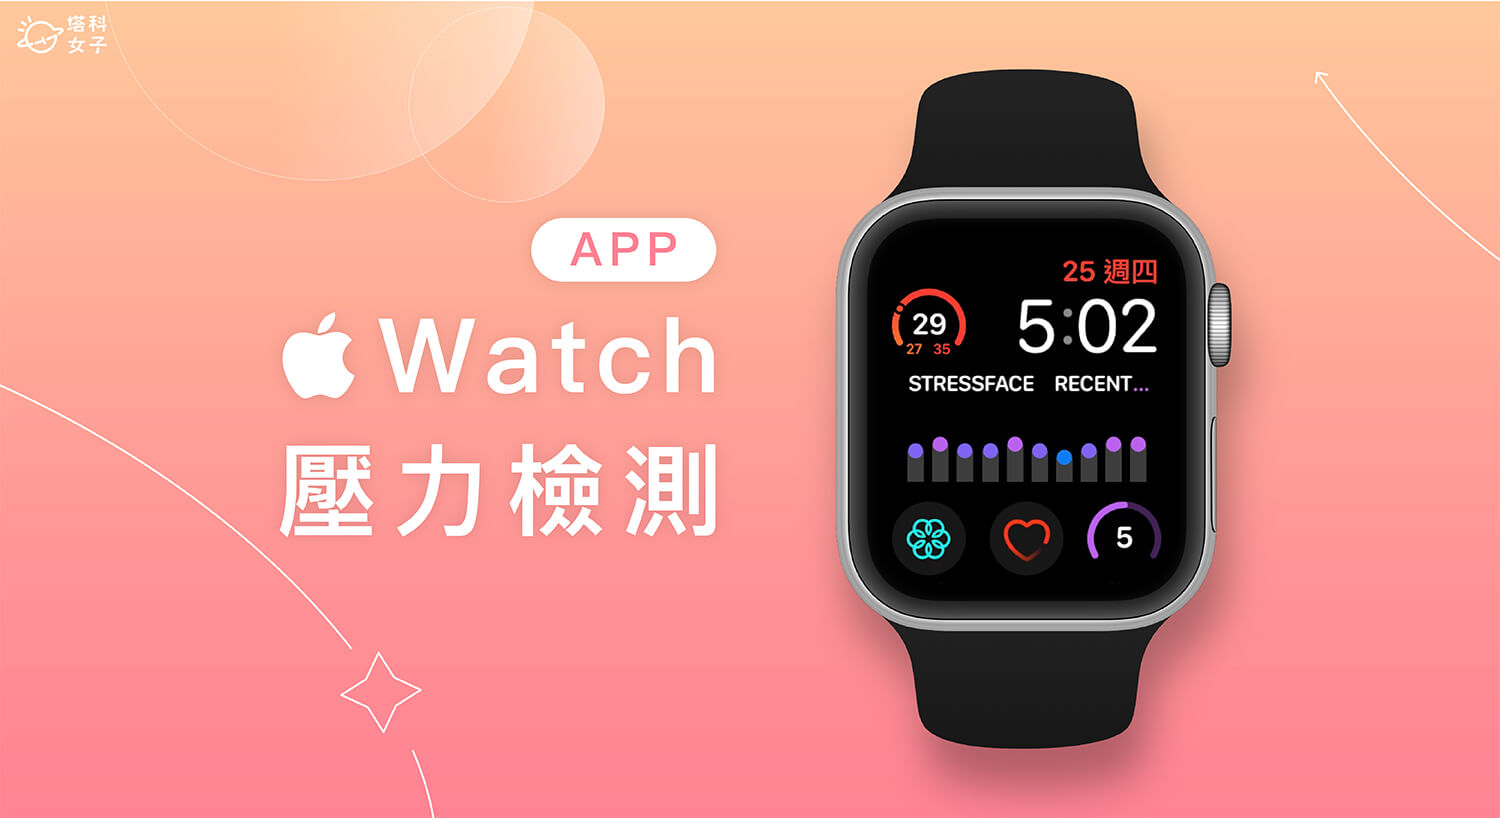 Apple Watch 壓力檢測 App《StressFace》追蹤壓力等級並加入錶面